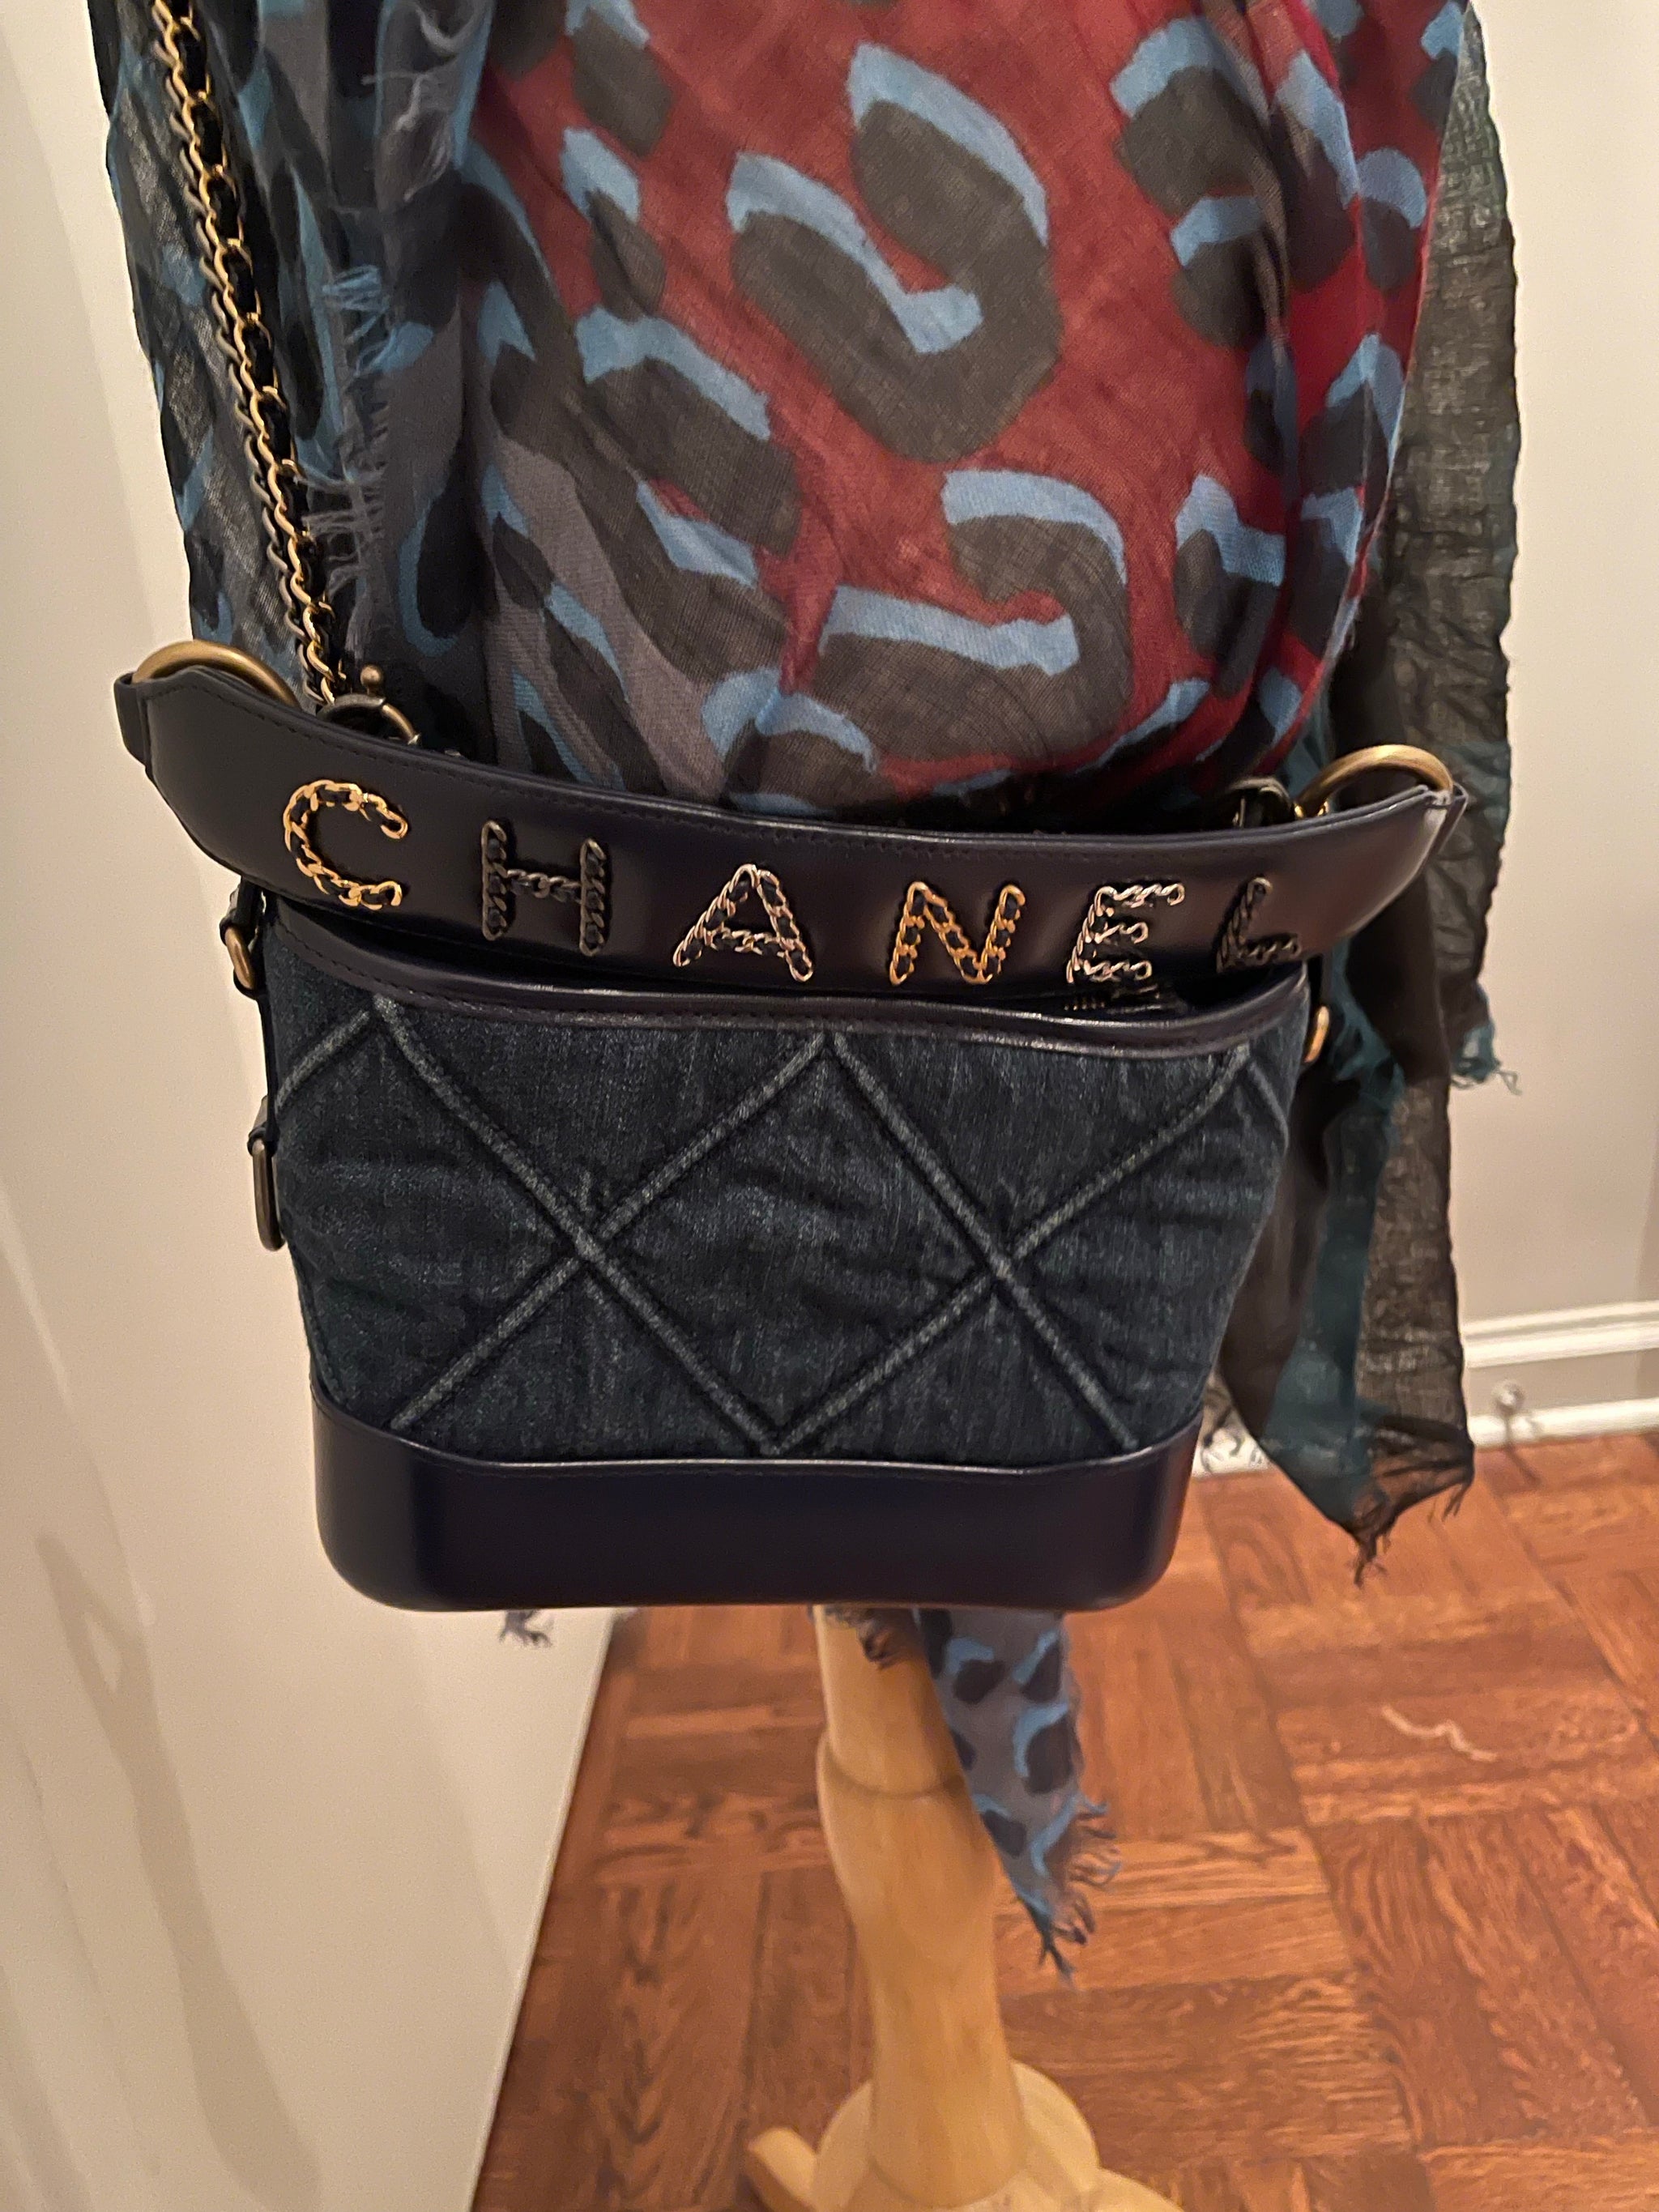 Chanel Gabrielle Small Denim Blue Crossbody Bag! - New Neu